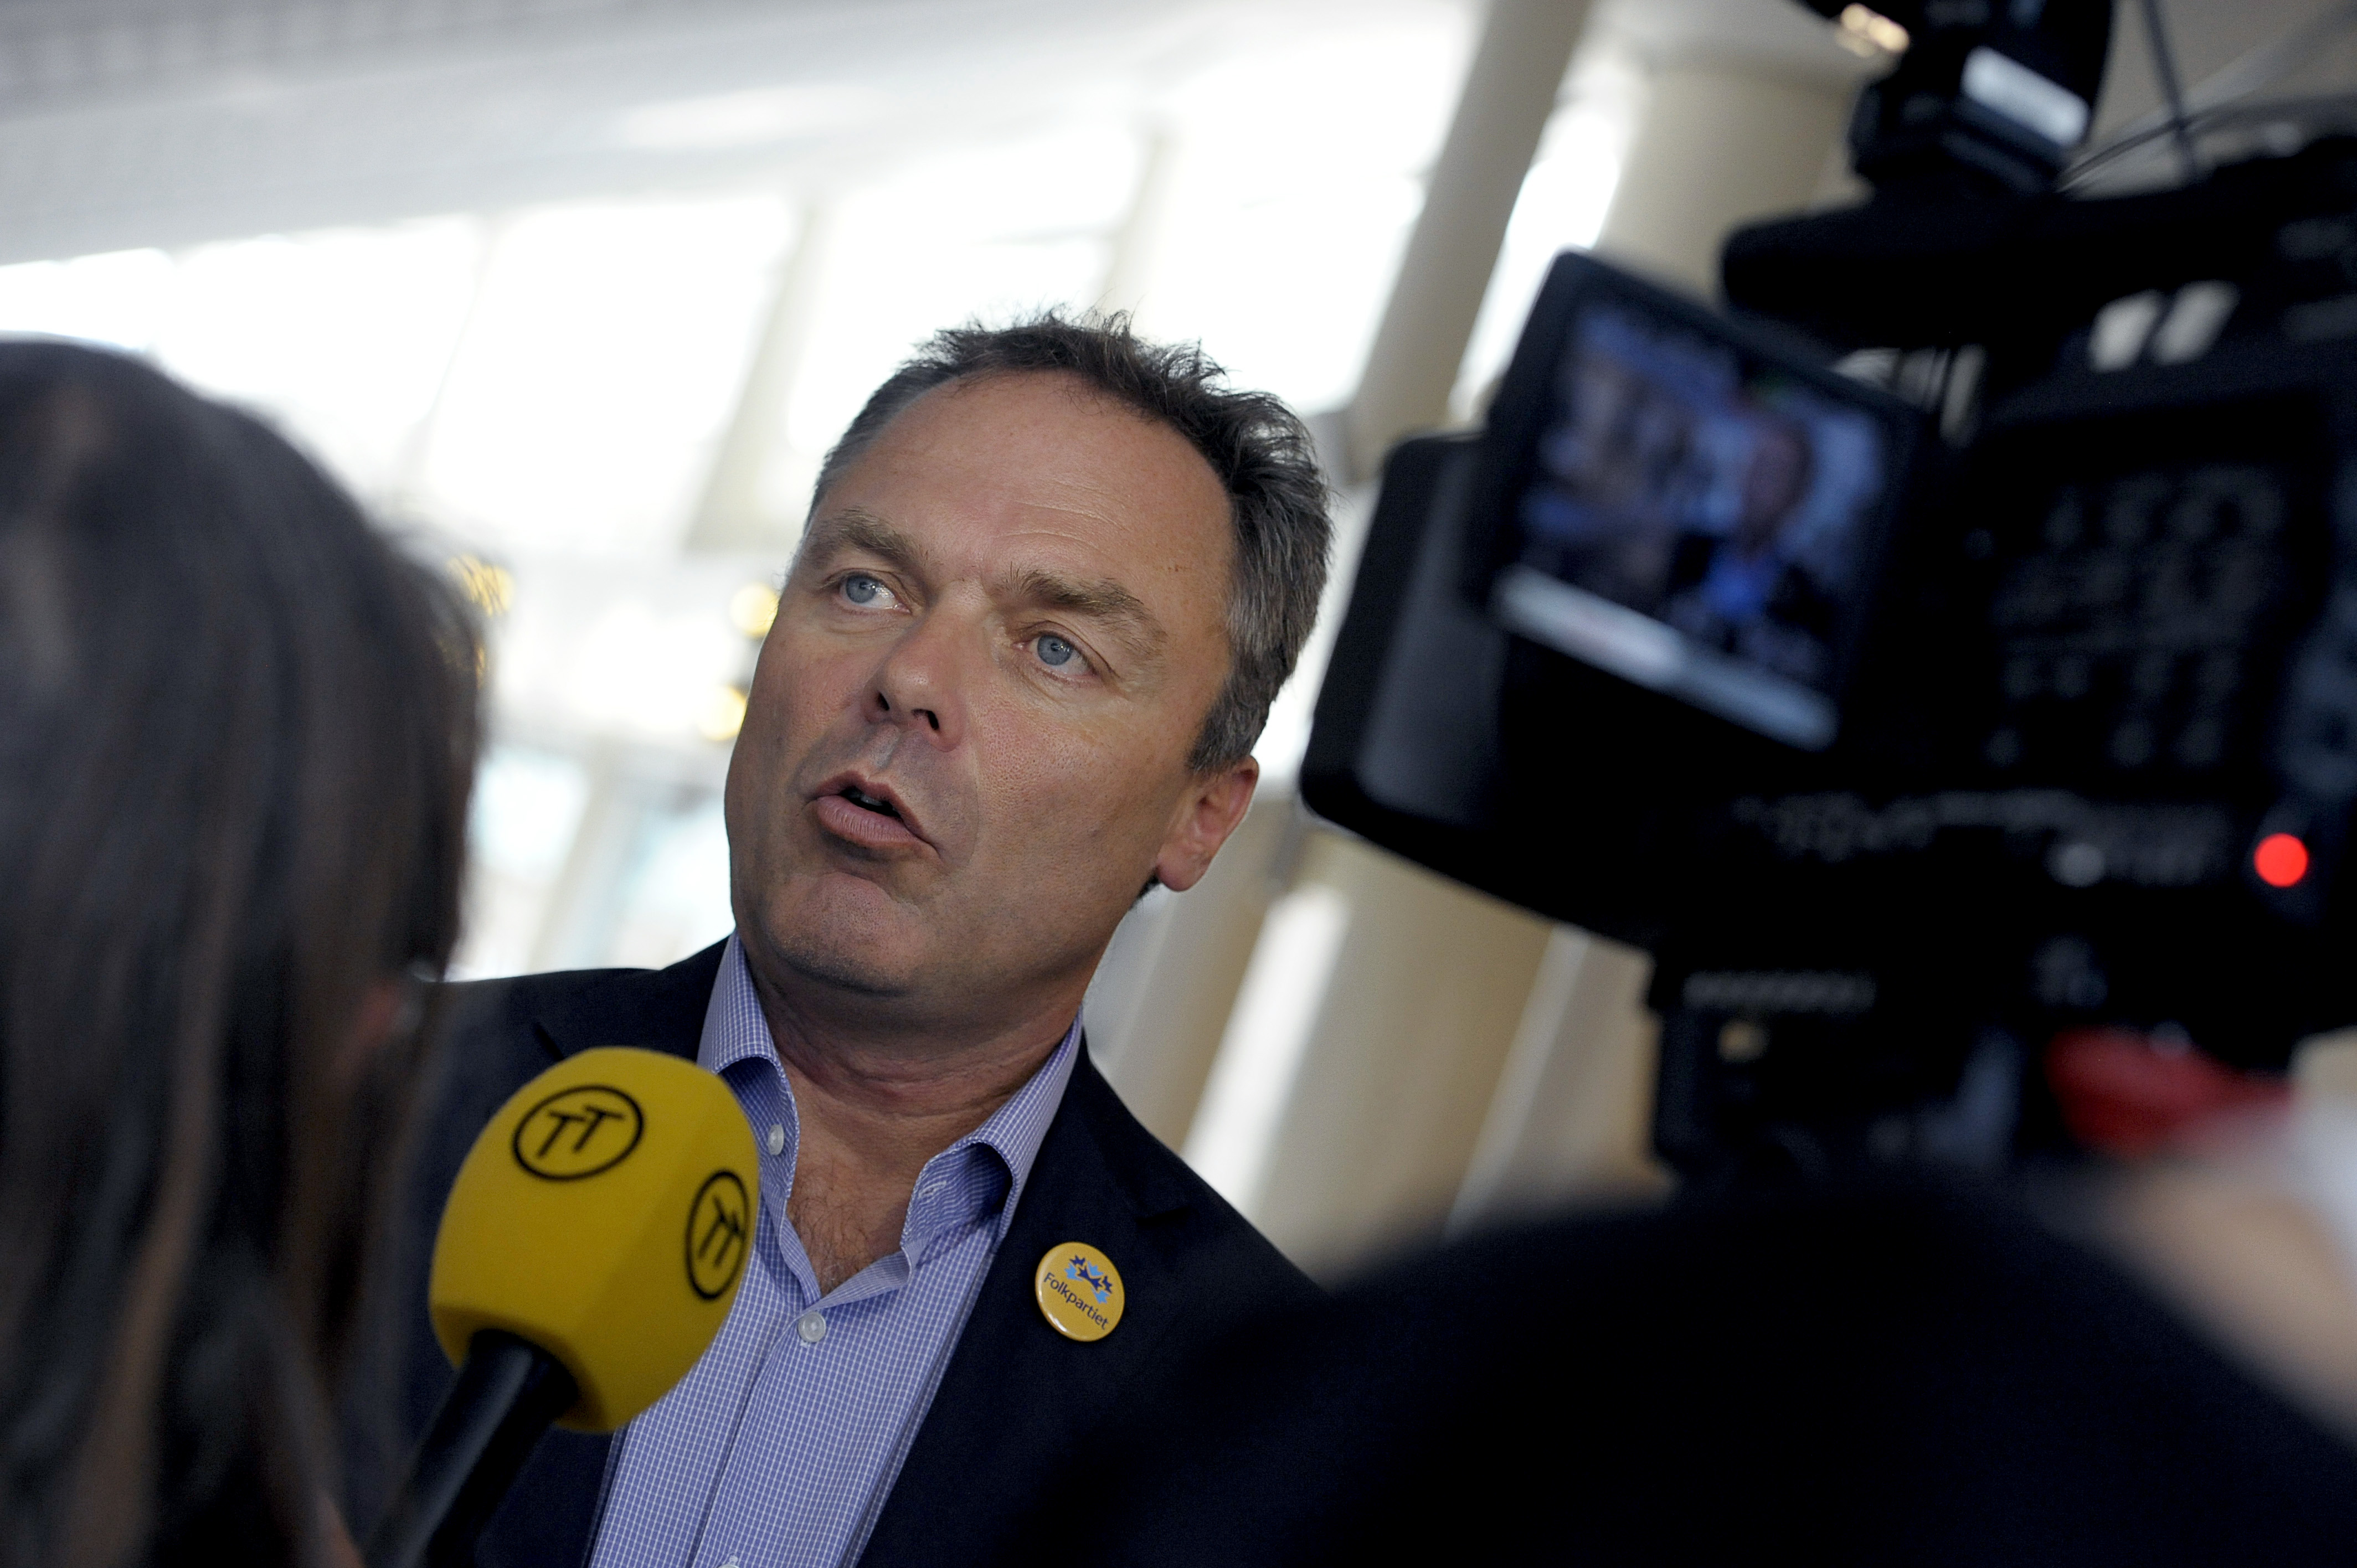 Folkpartiets partiledare, utbildningsminister Jan Björklund, vill stoppa skolbonusar.